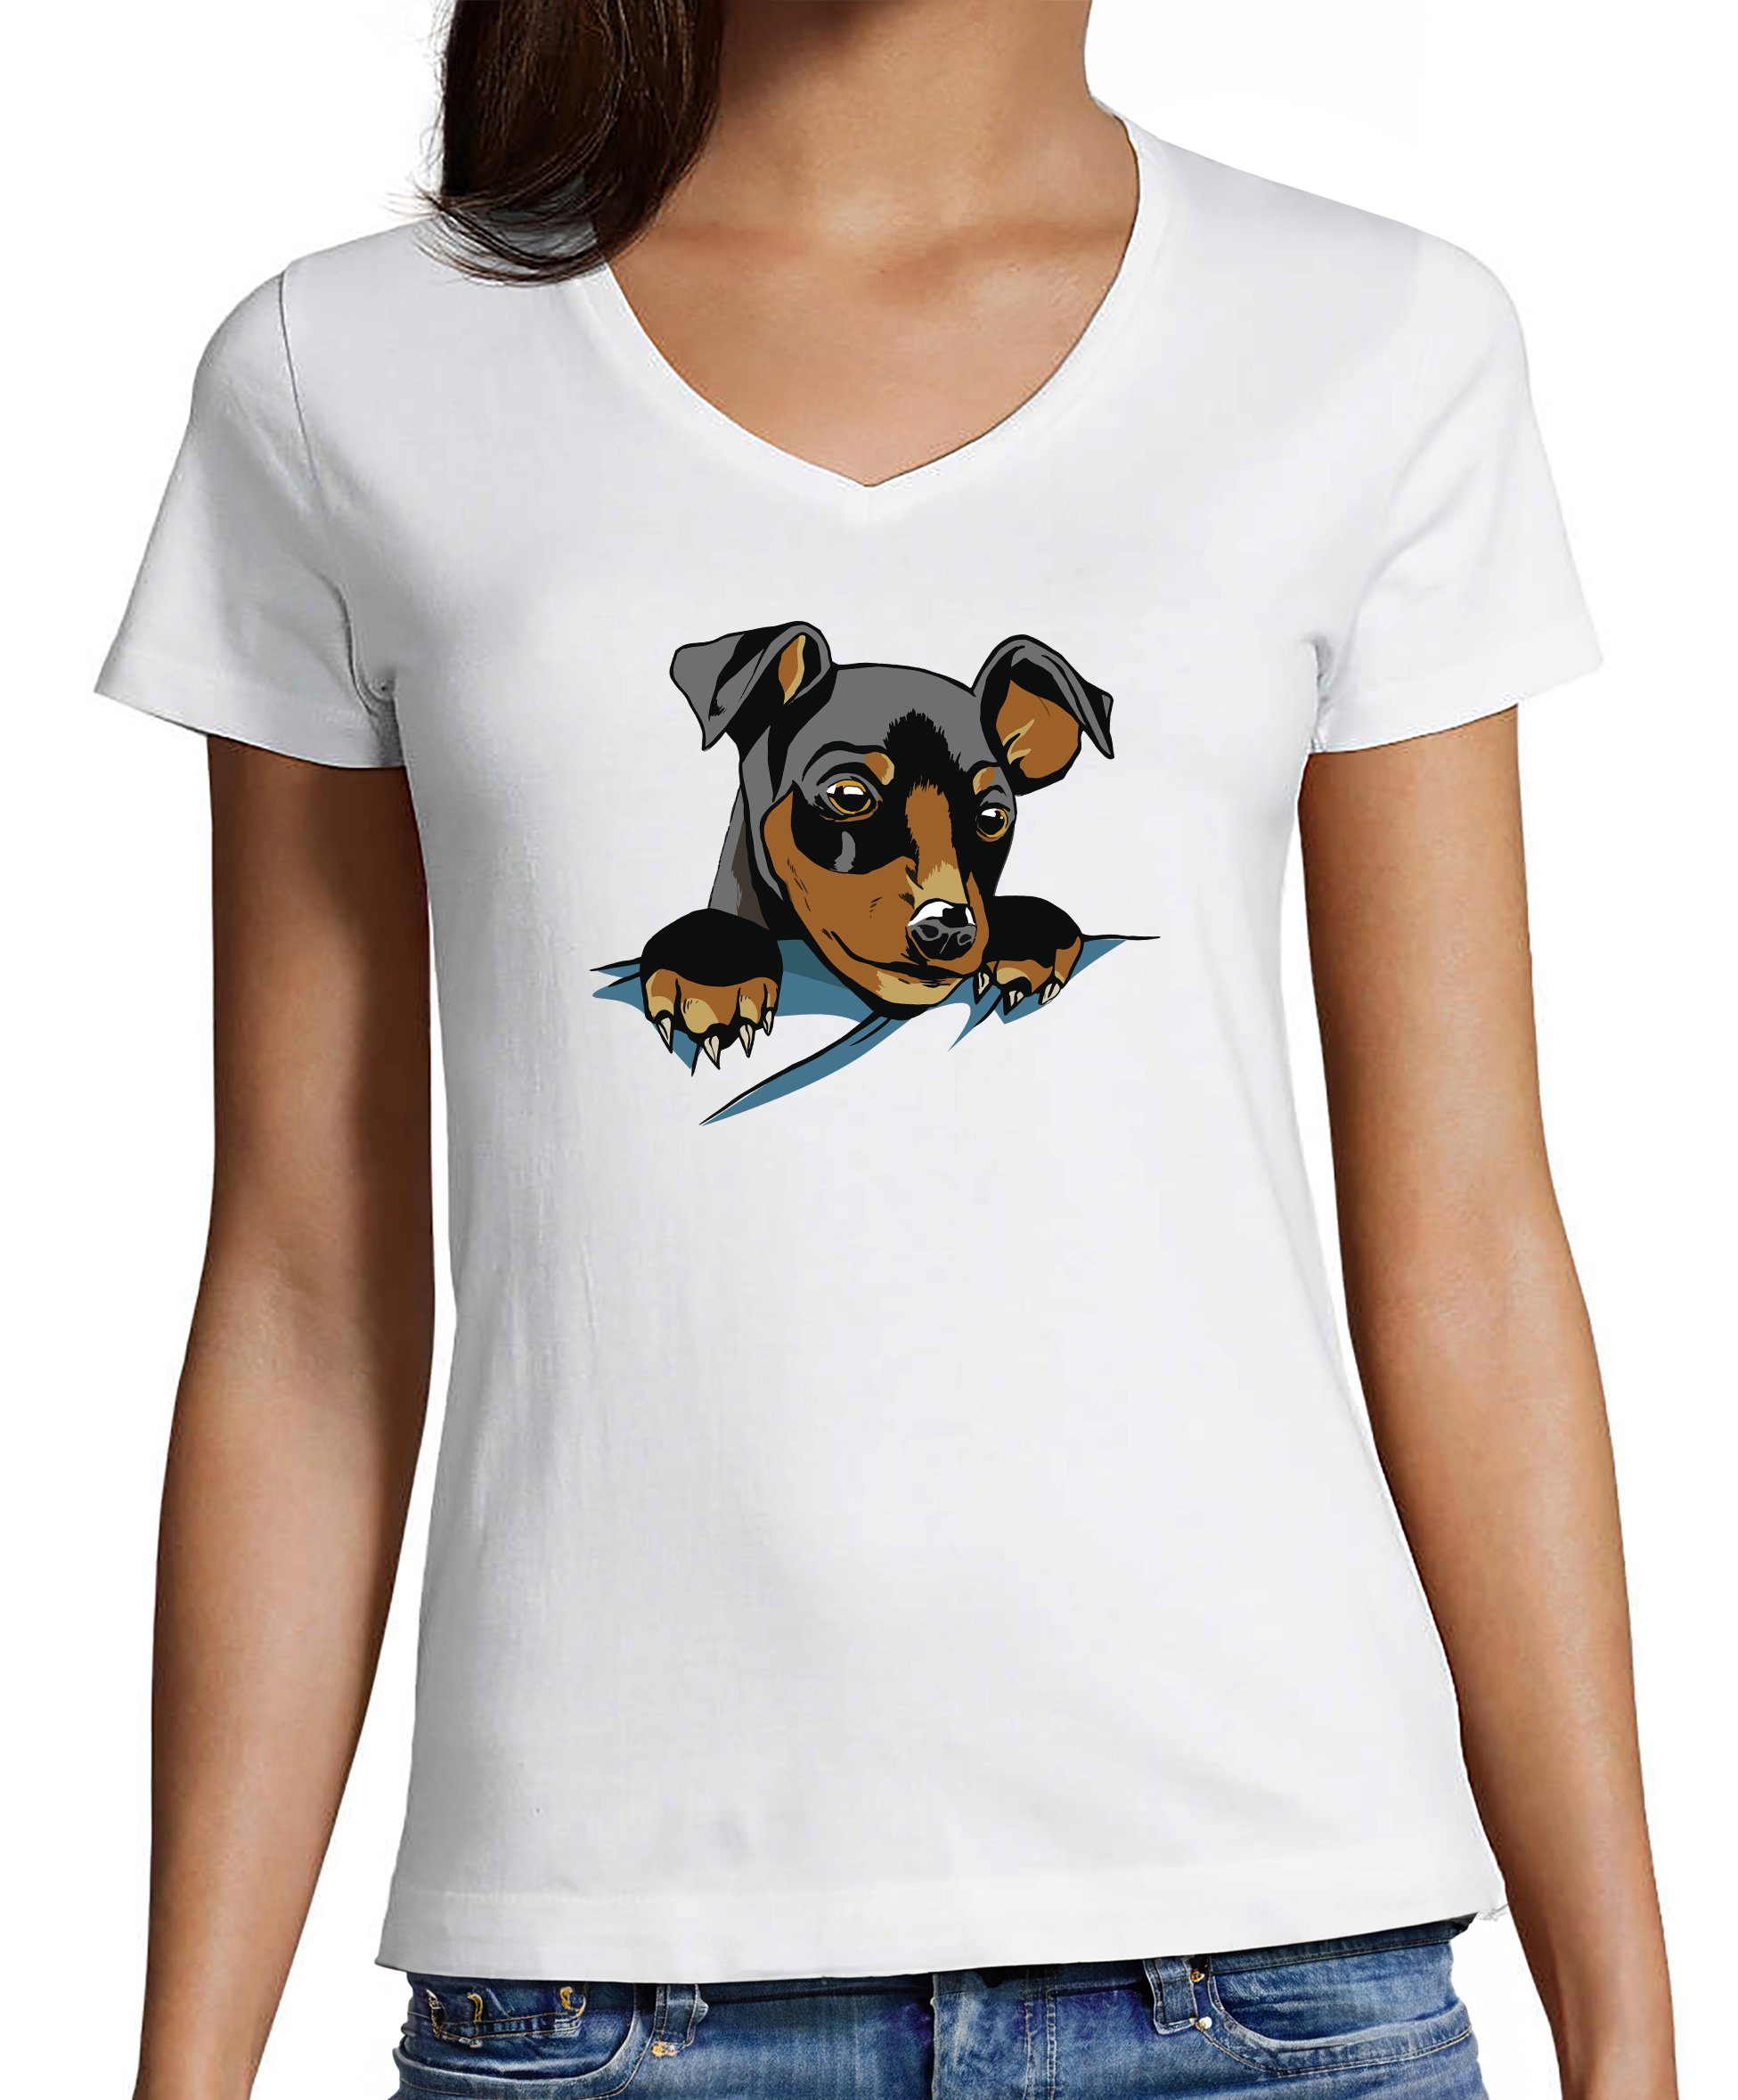 MyDesign24 T-Shirt Damen Hunde Print Shirt bedruckt - Süßer Hundewelpe V-Ausschnitt Baumwollshirt mit Aufdruck, Slim Fit, i227 weiss